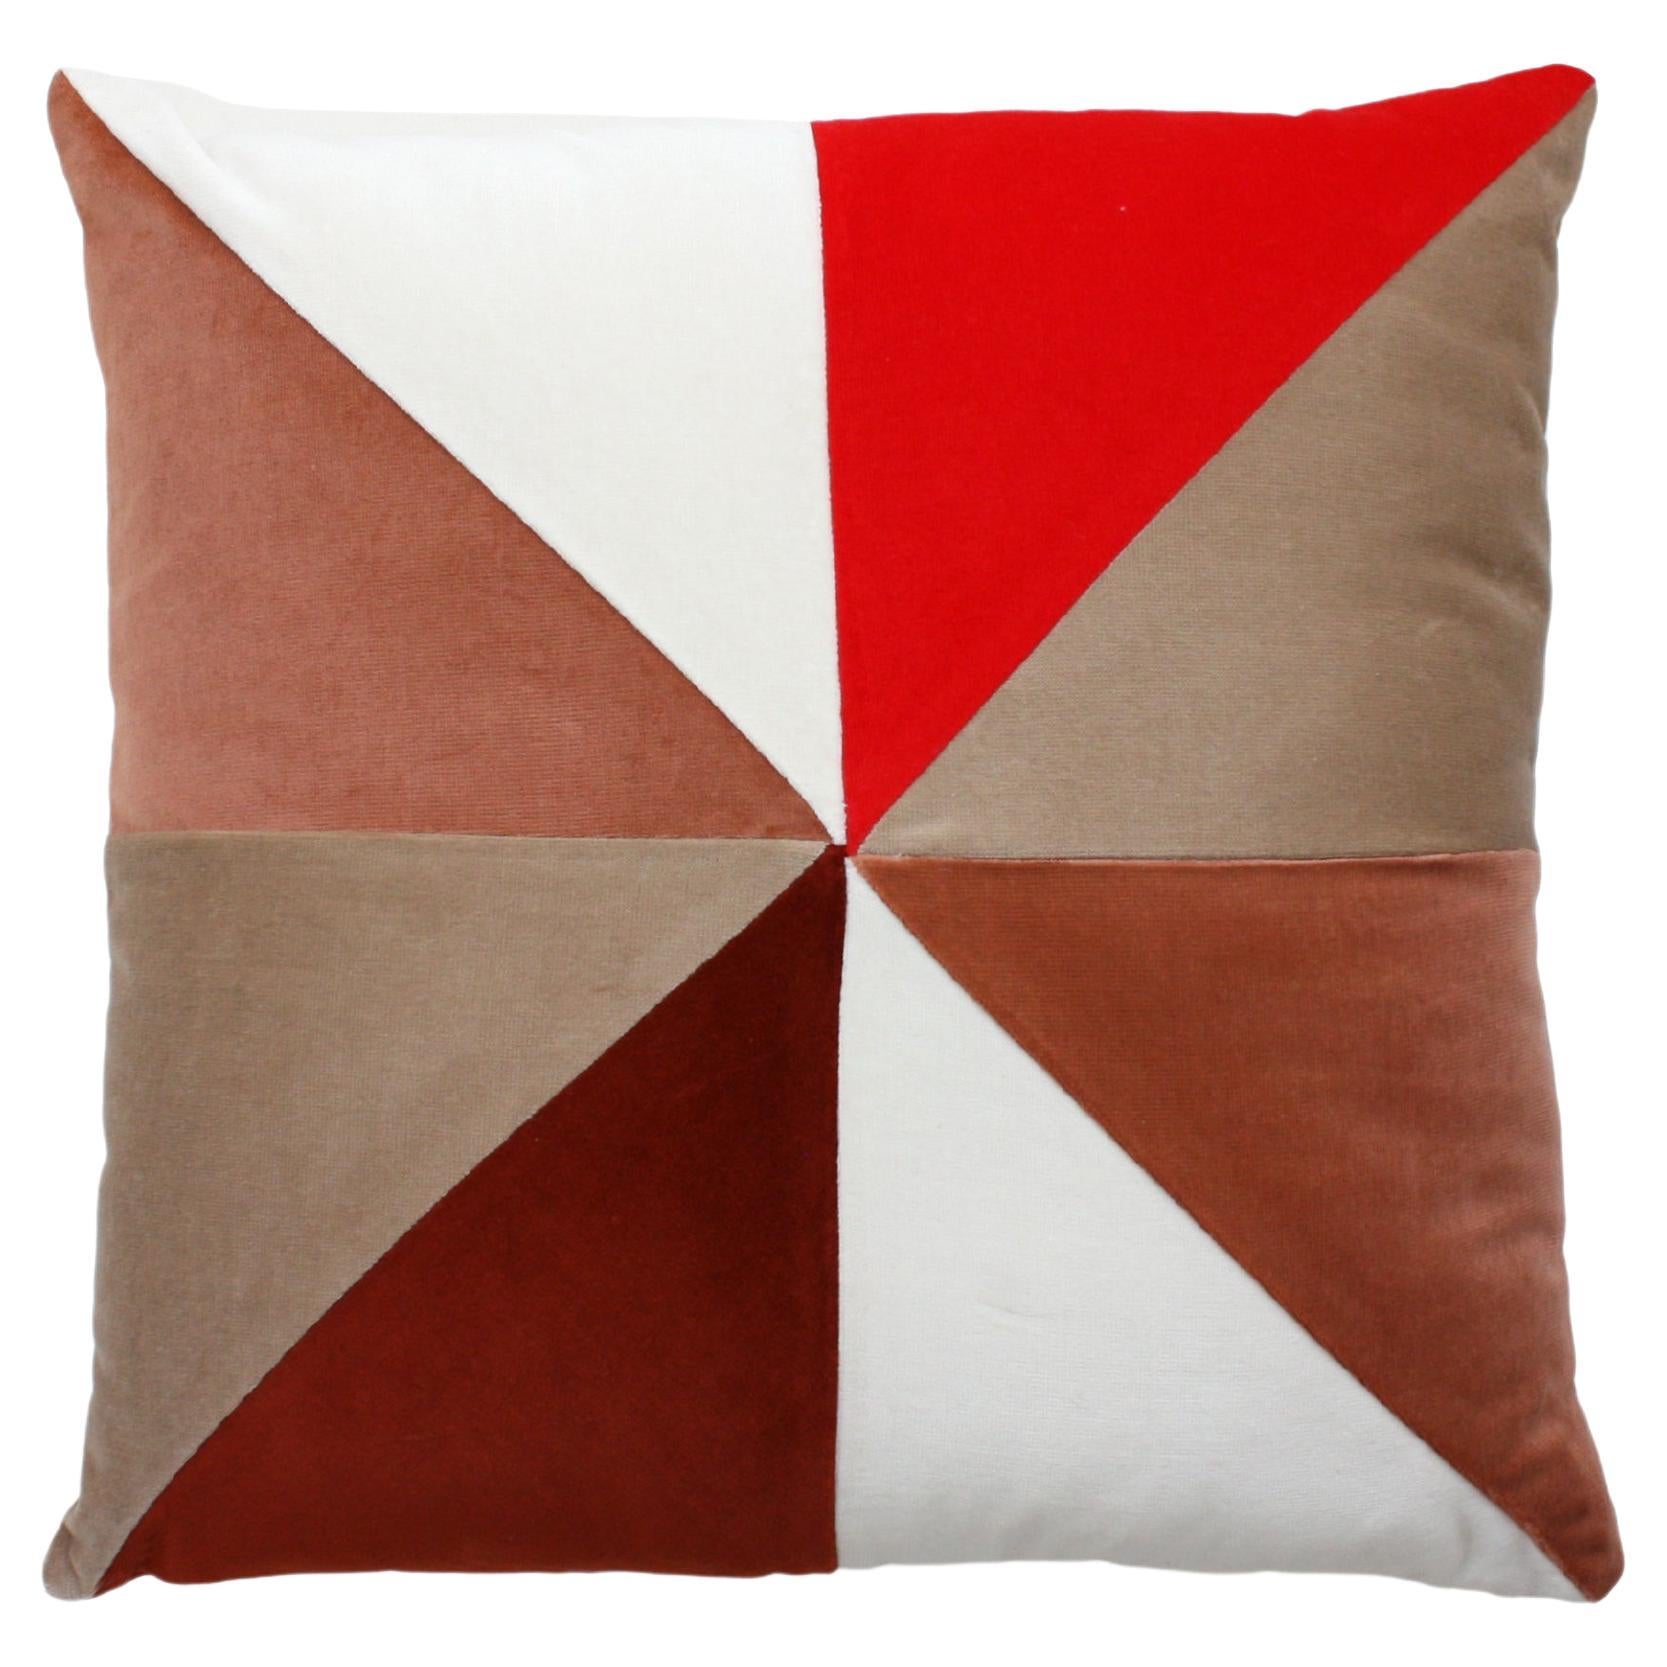 Safira Earth Velvet Deluxe Handmade Decorative Pillow